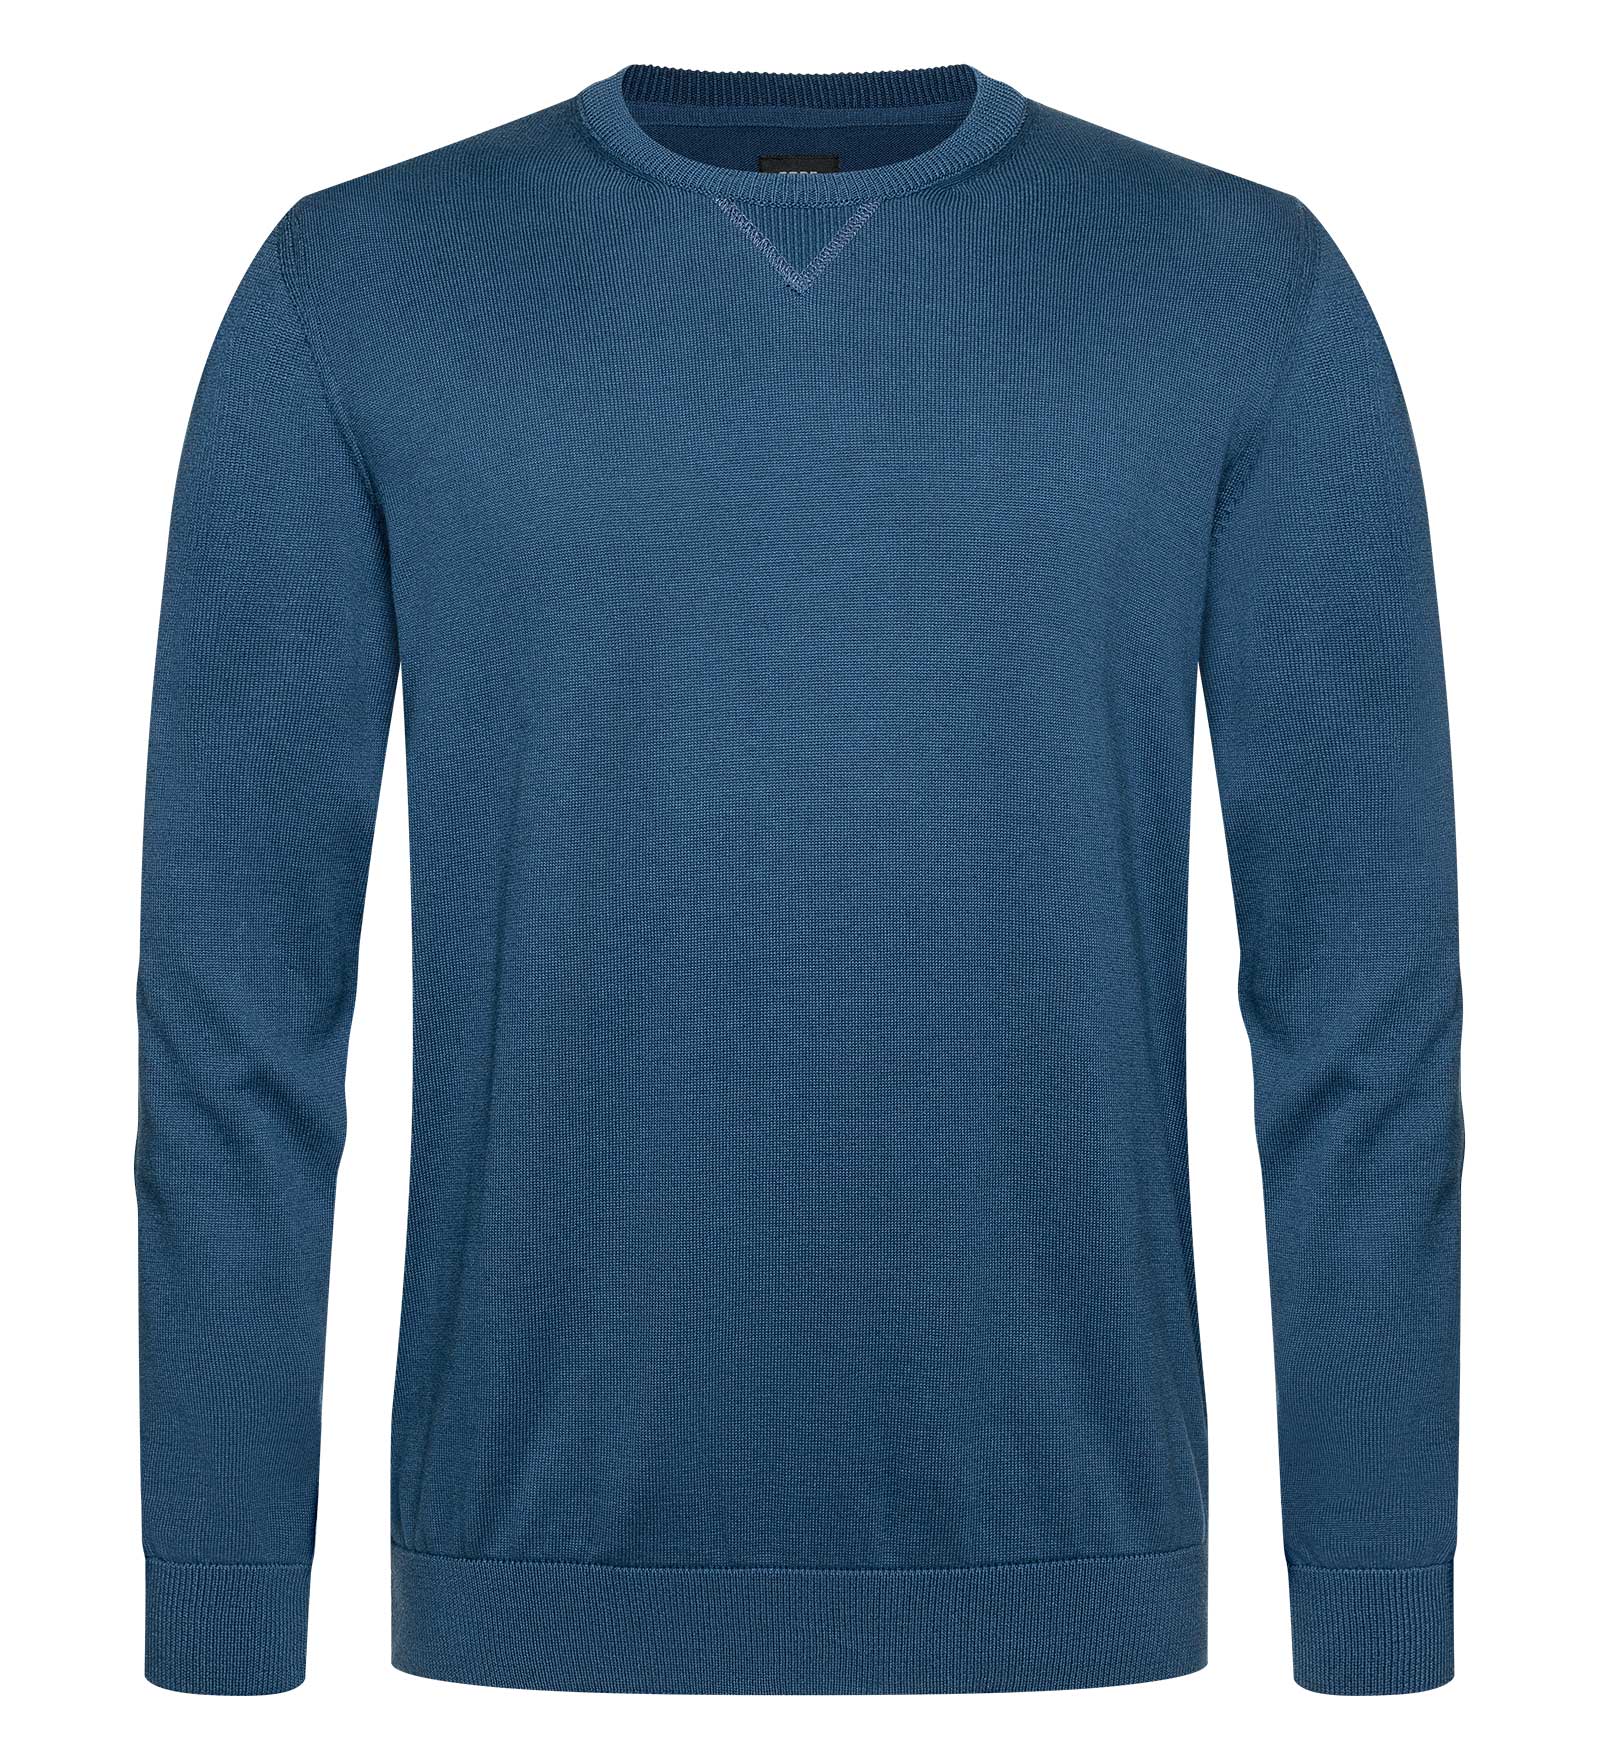 Pullover Herren Sunrise blau XL CODE-ZERO von CODE-ZERO